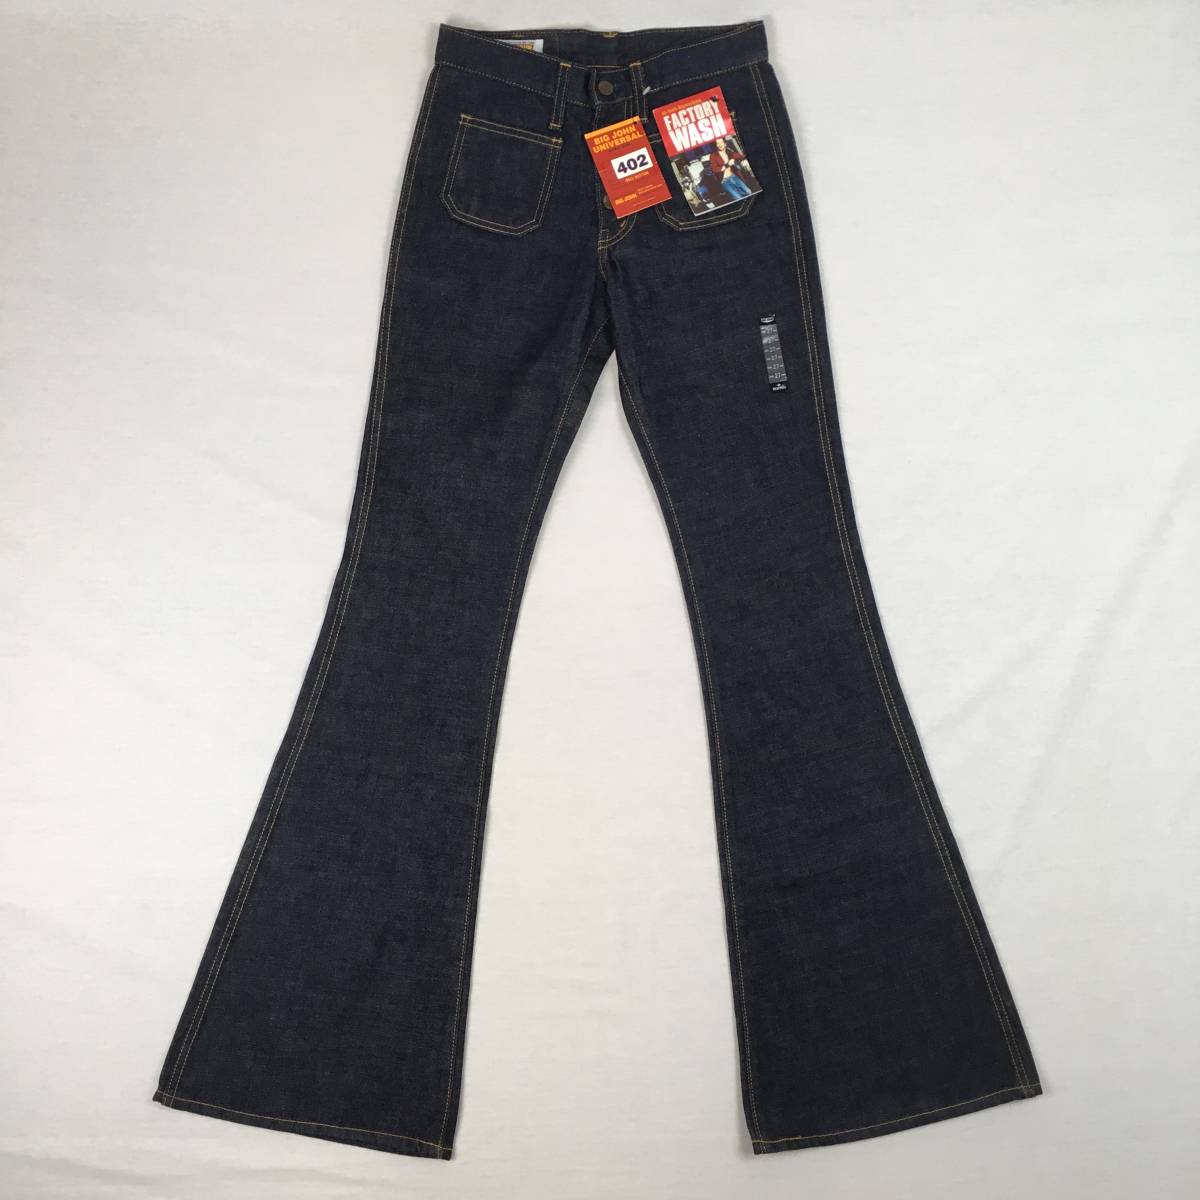 [ новый товар ]BIGJOHN Big John ML402BX сделано в Японии bell низ ботинки cut Denim брюки джинсы W27 кнопка fly 